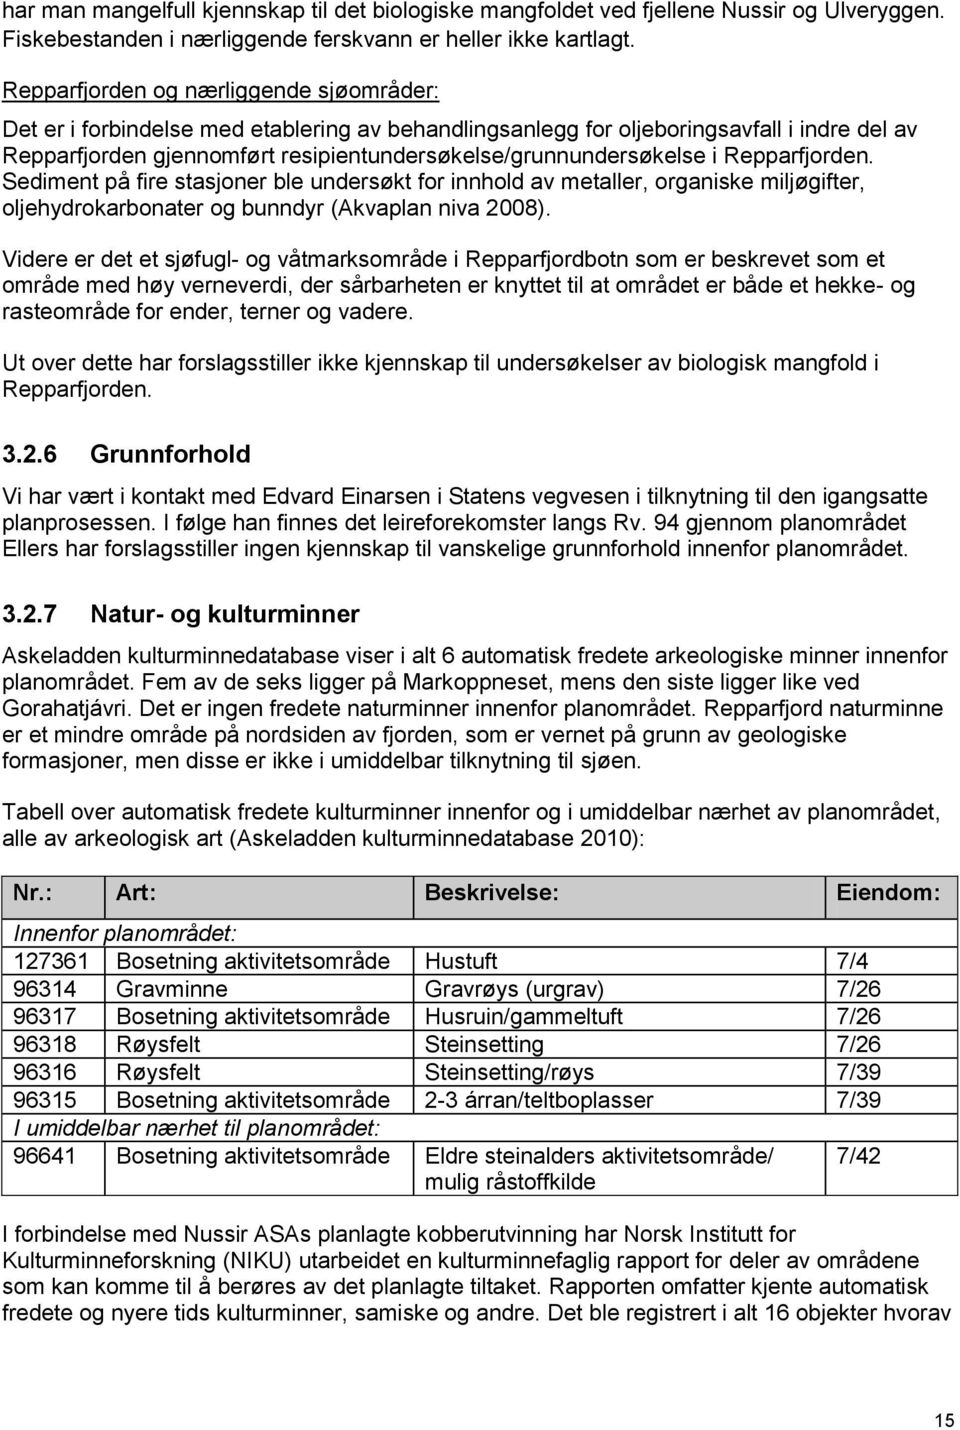 resipientundersøkelse/grunnundersøkelse i Repparfjorden. Sediment på fire stasjoner ble undersøkt for innhold av metaller, organiske miljøgifter, oljehydrokarbonater og bunndyr (Akvaplan niva 2008).